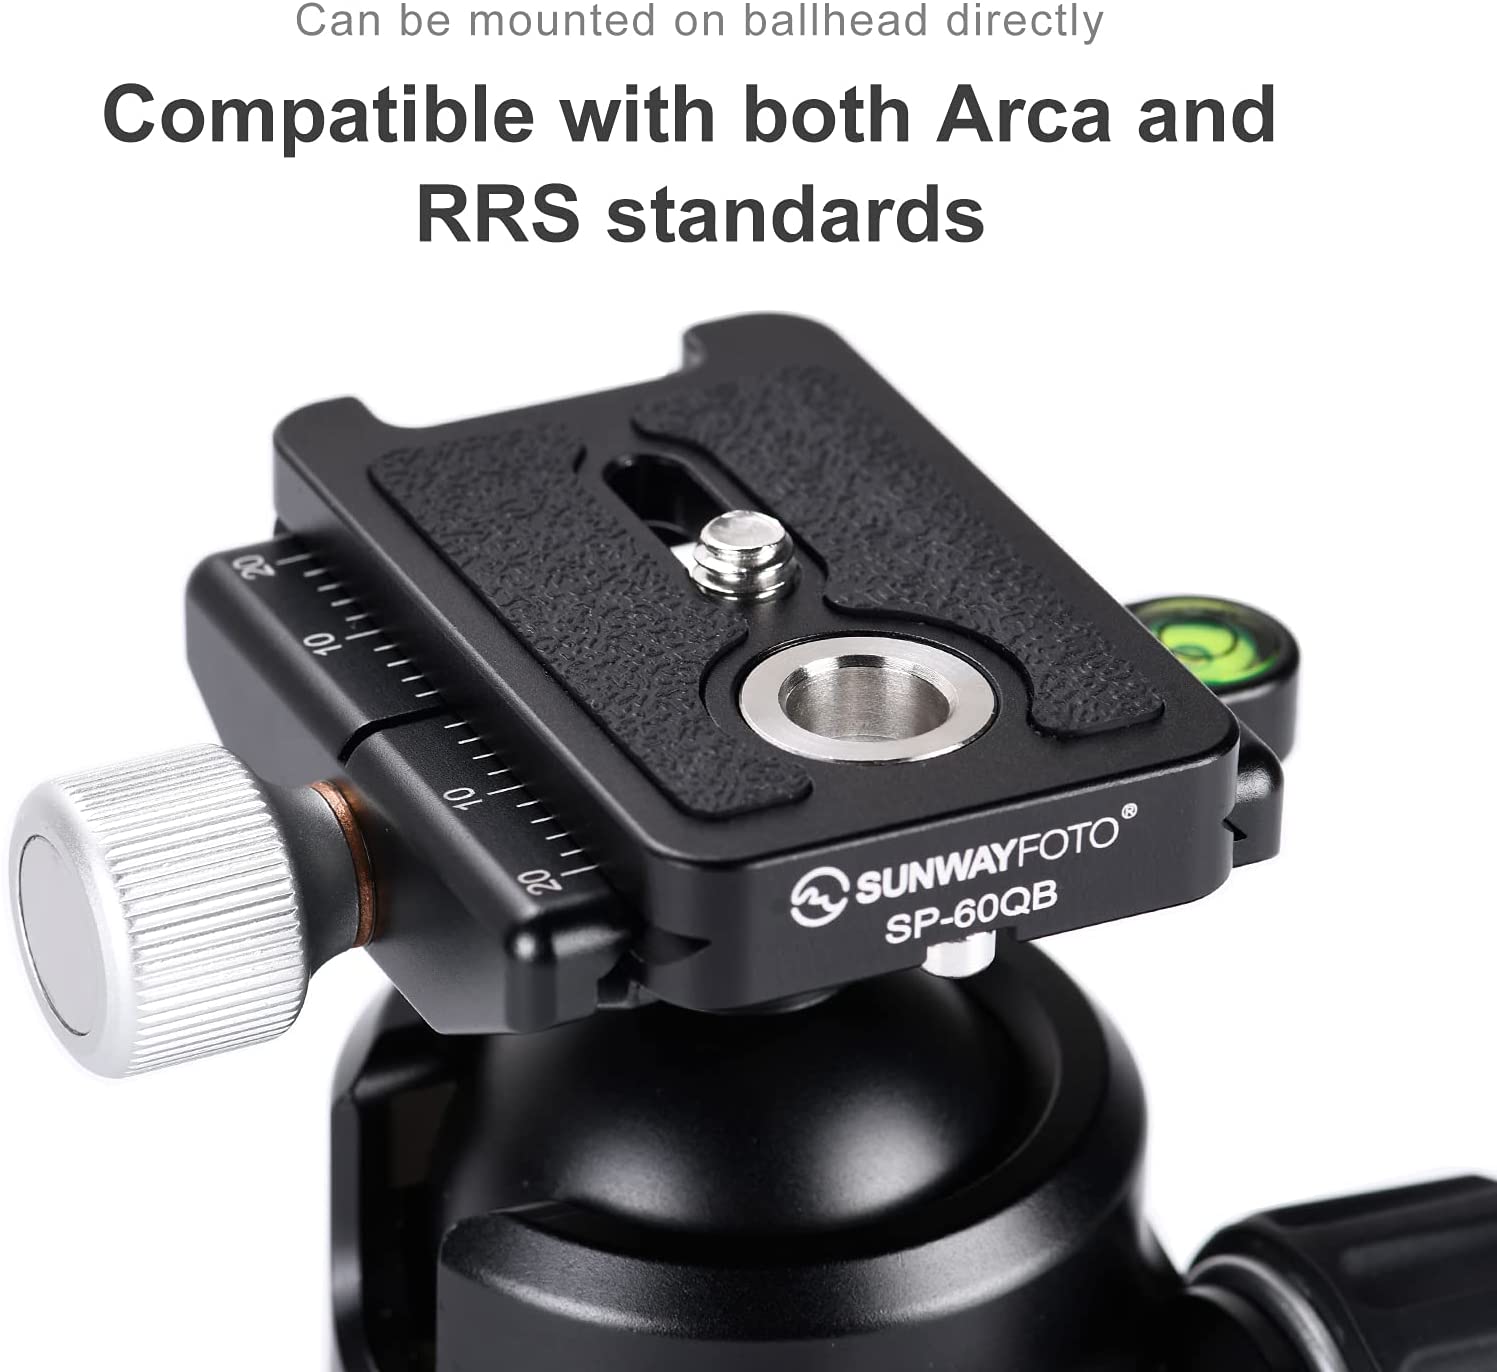 Sunwayfoto SP-60QB Camera Plate with QD (Quick Detach) socket